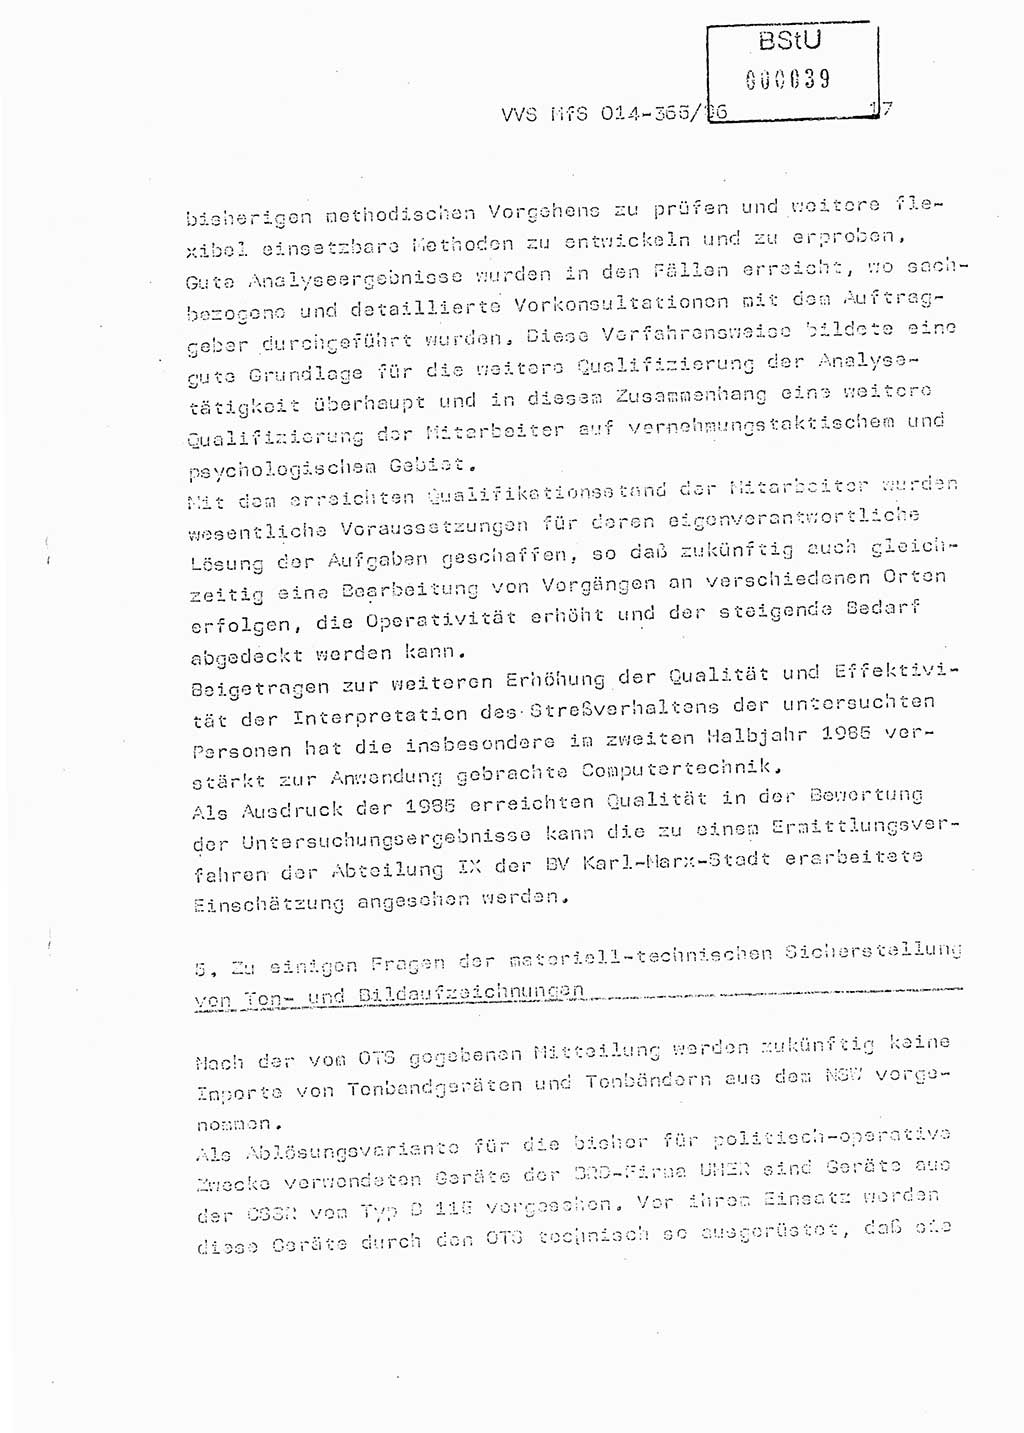 Ministerium für Staatssicherheit (MfS) [Deutsche Demokratische Republik (DDR)], Hauptabteilung (HA) Ⅸ/ Auswertungs- und Kontrollgruppe (AKG), Bereich Koordinierung, Jahresanalyse, Vertrauliche Verschlußsache (VVS) o014-365/86, Berlin 1985, Seite 17 (J.-Anal. MfS DDR HA Ⅸ/AKG VVS o014-365/86 1985, S. 17)